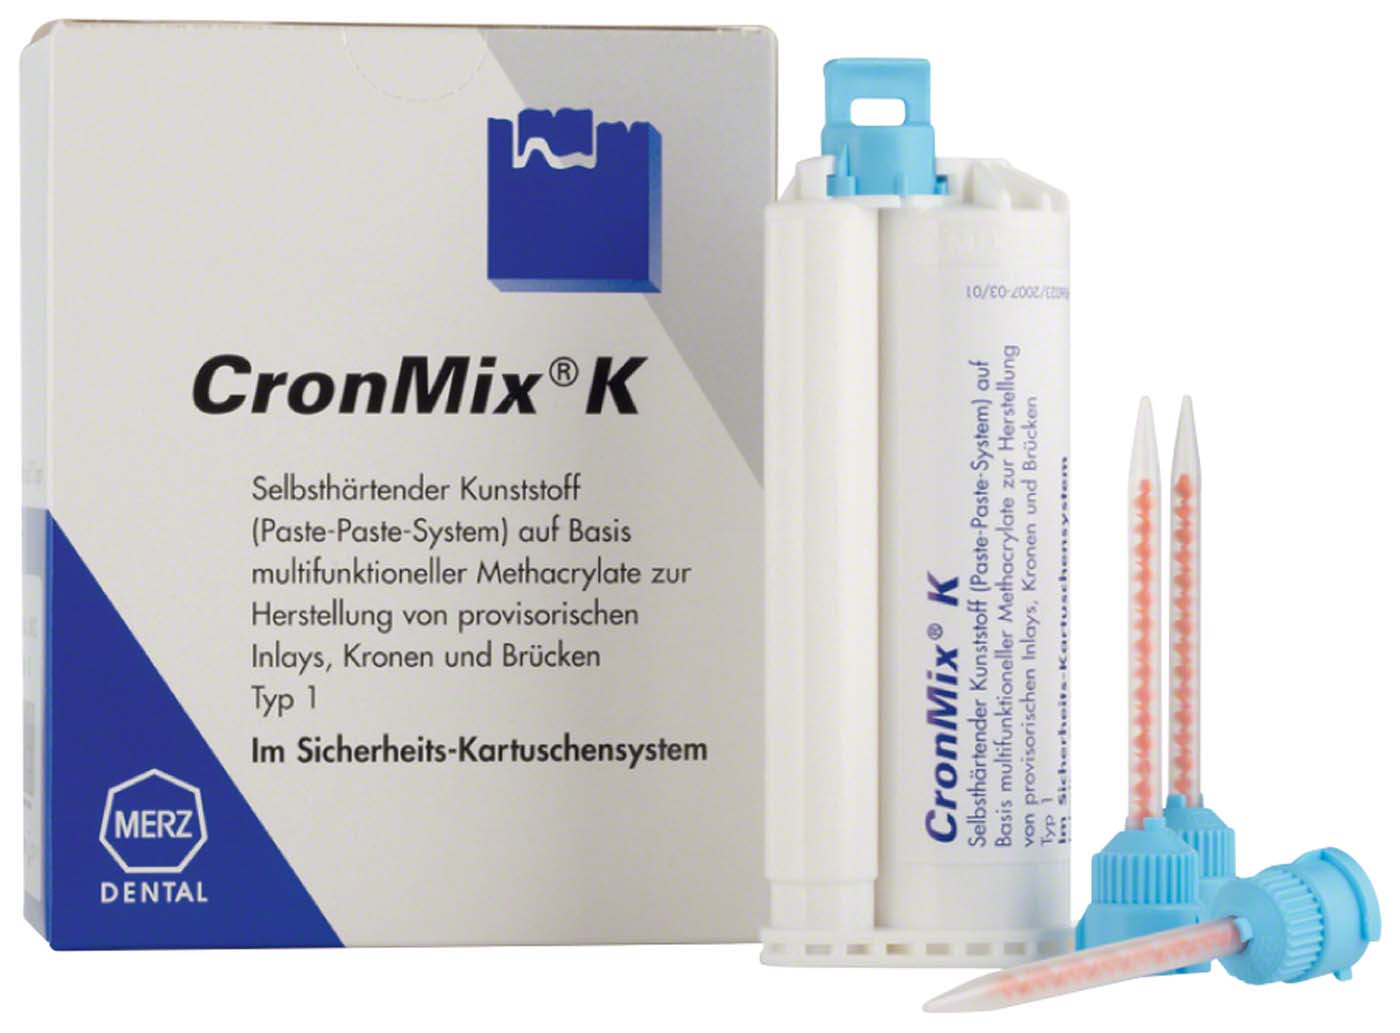 CronMix® K Merz Dental